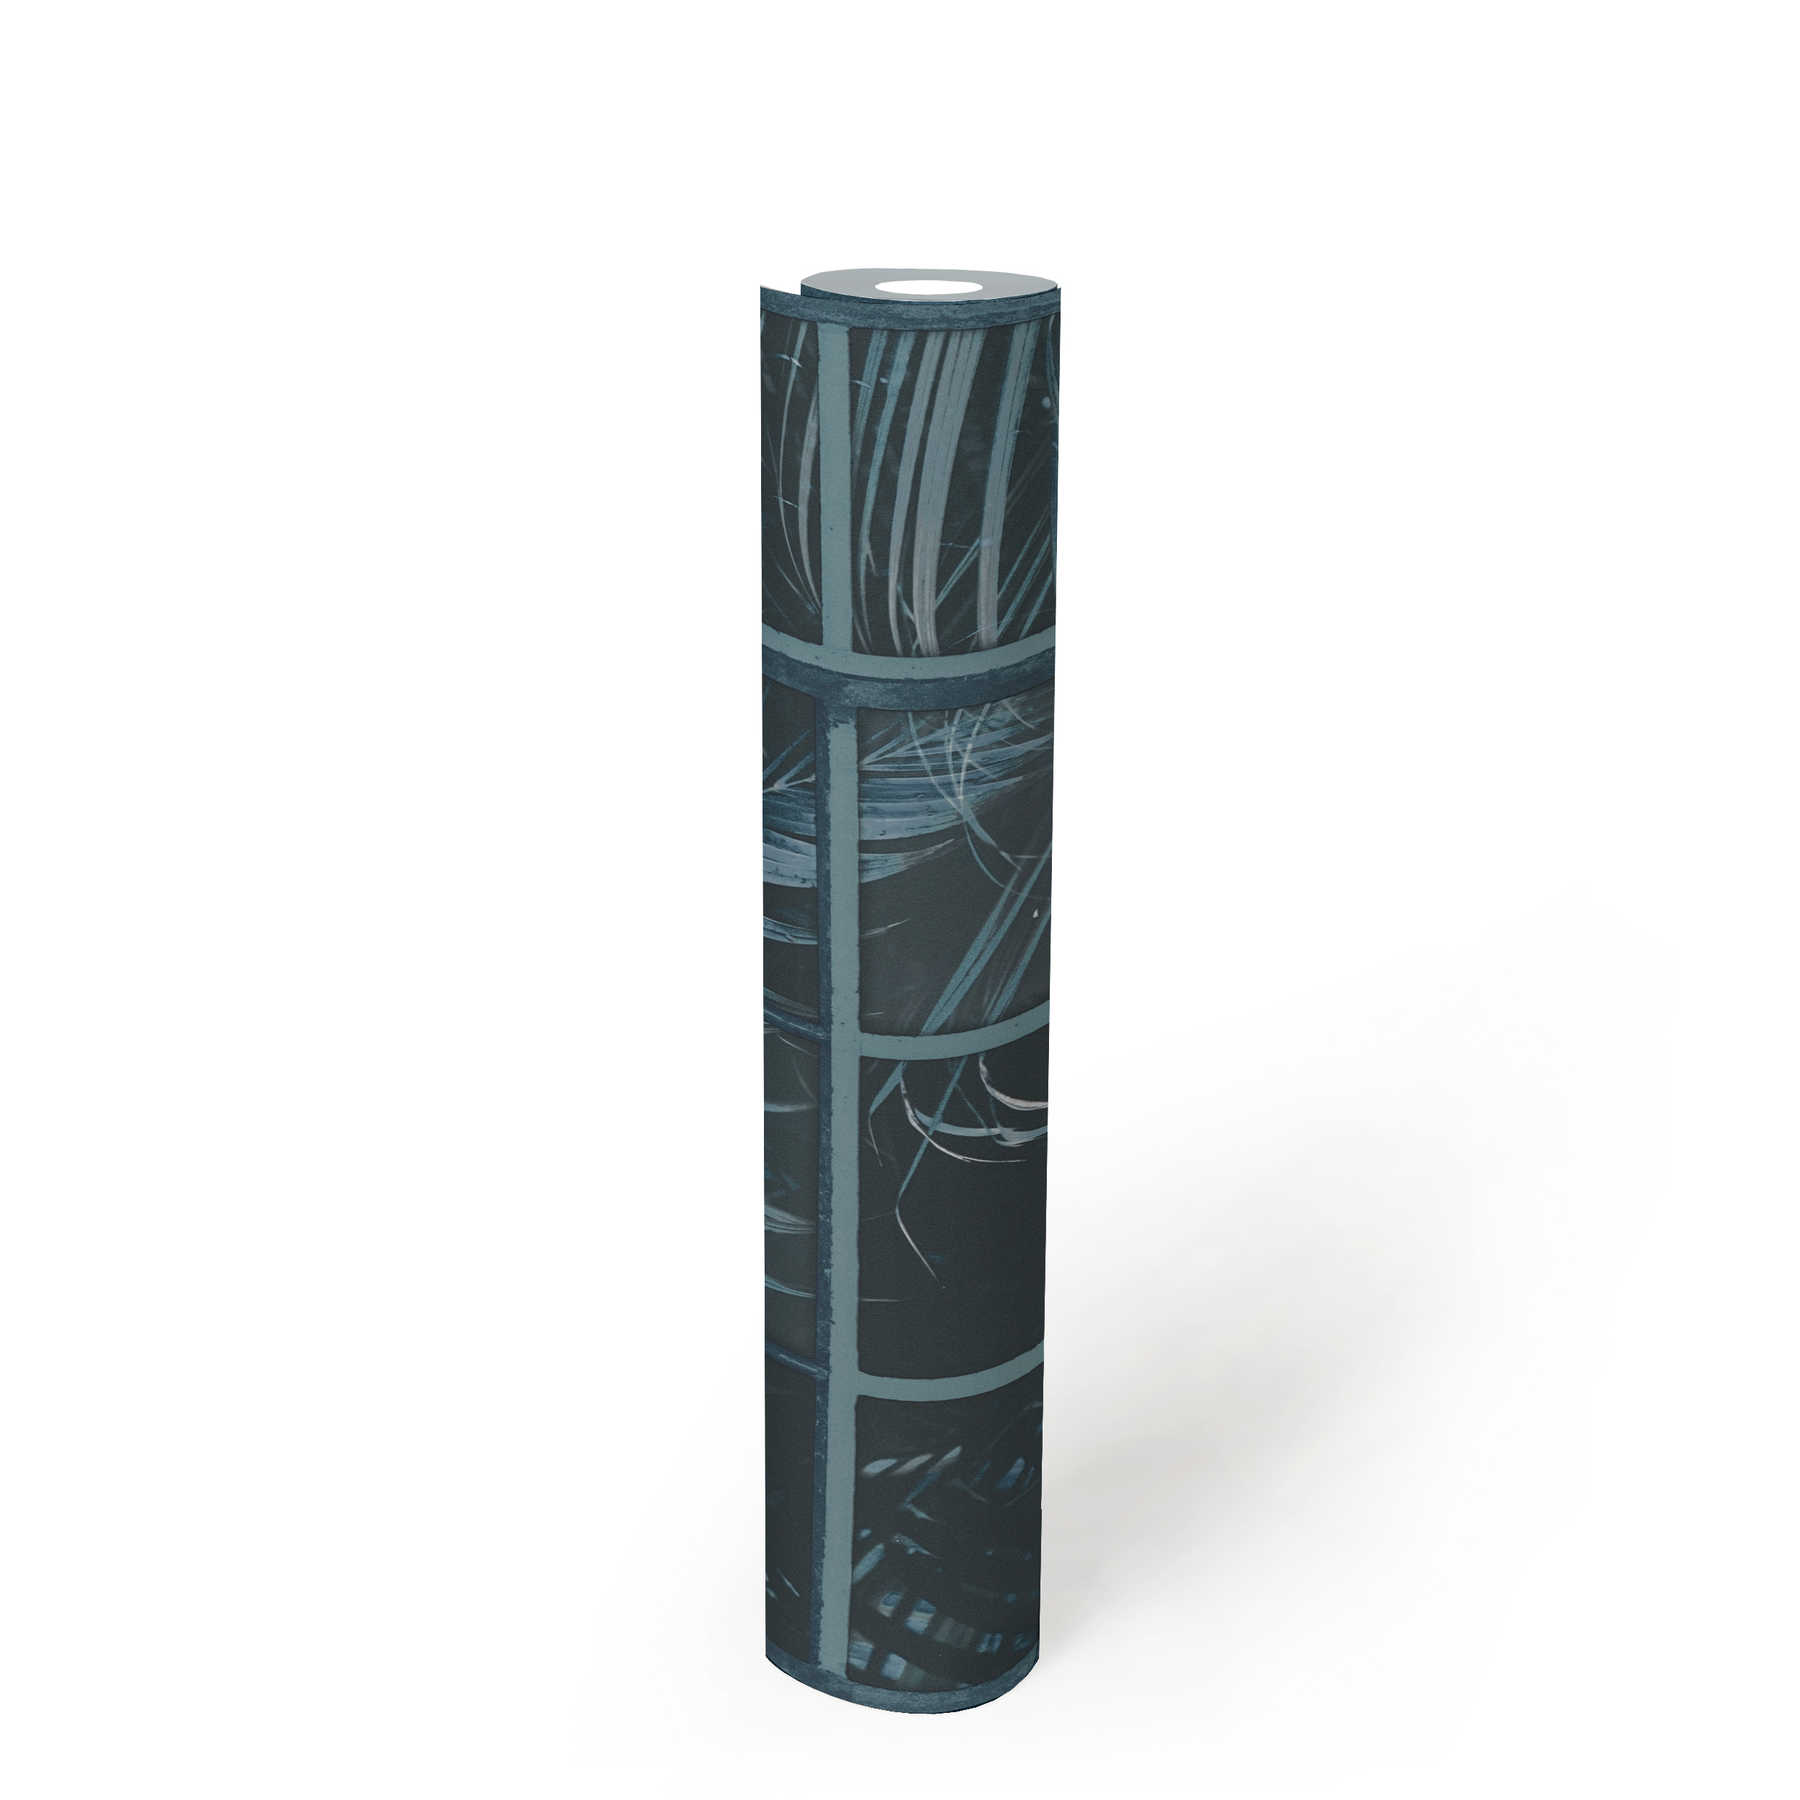             Finestra in carta da parati con vista sulla giungla ed effetto 3D - Blu, Nero
        